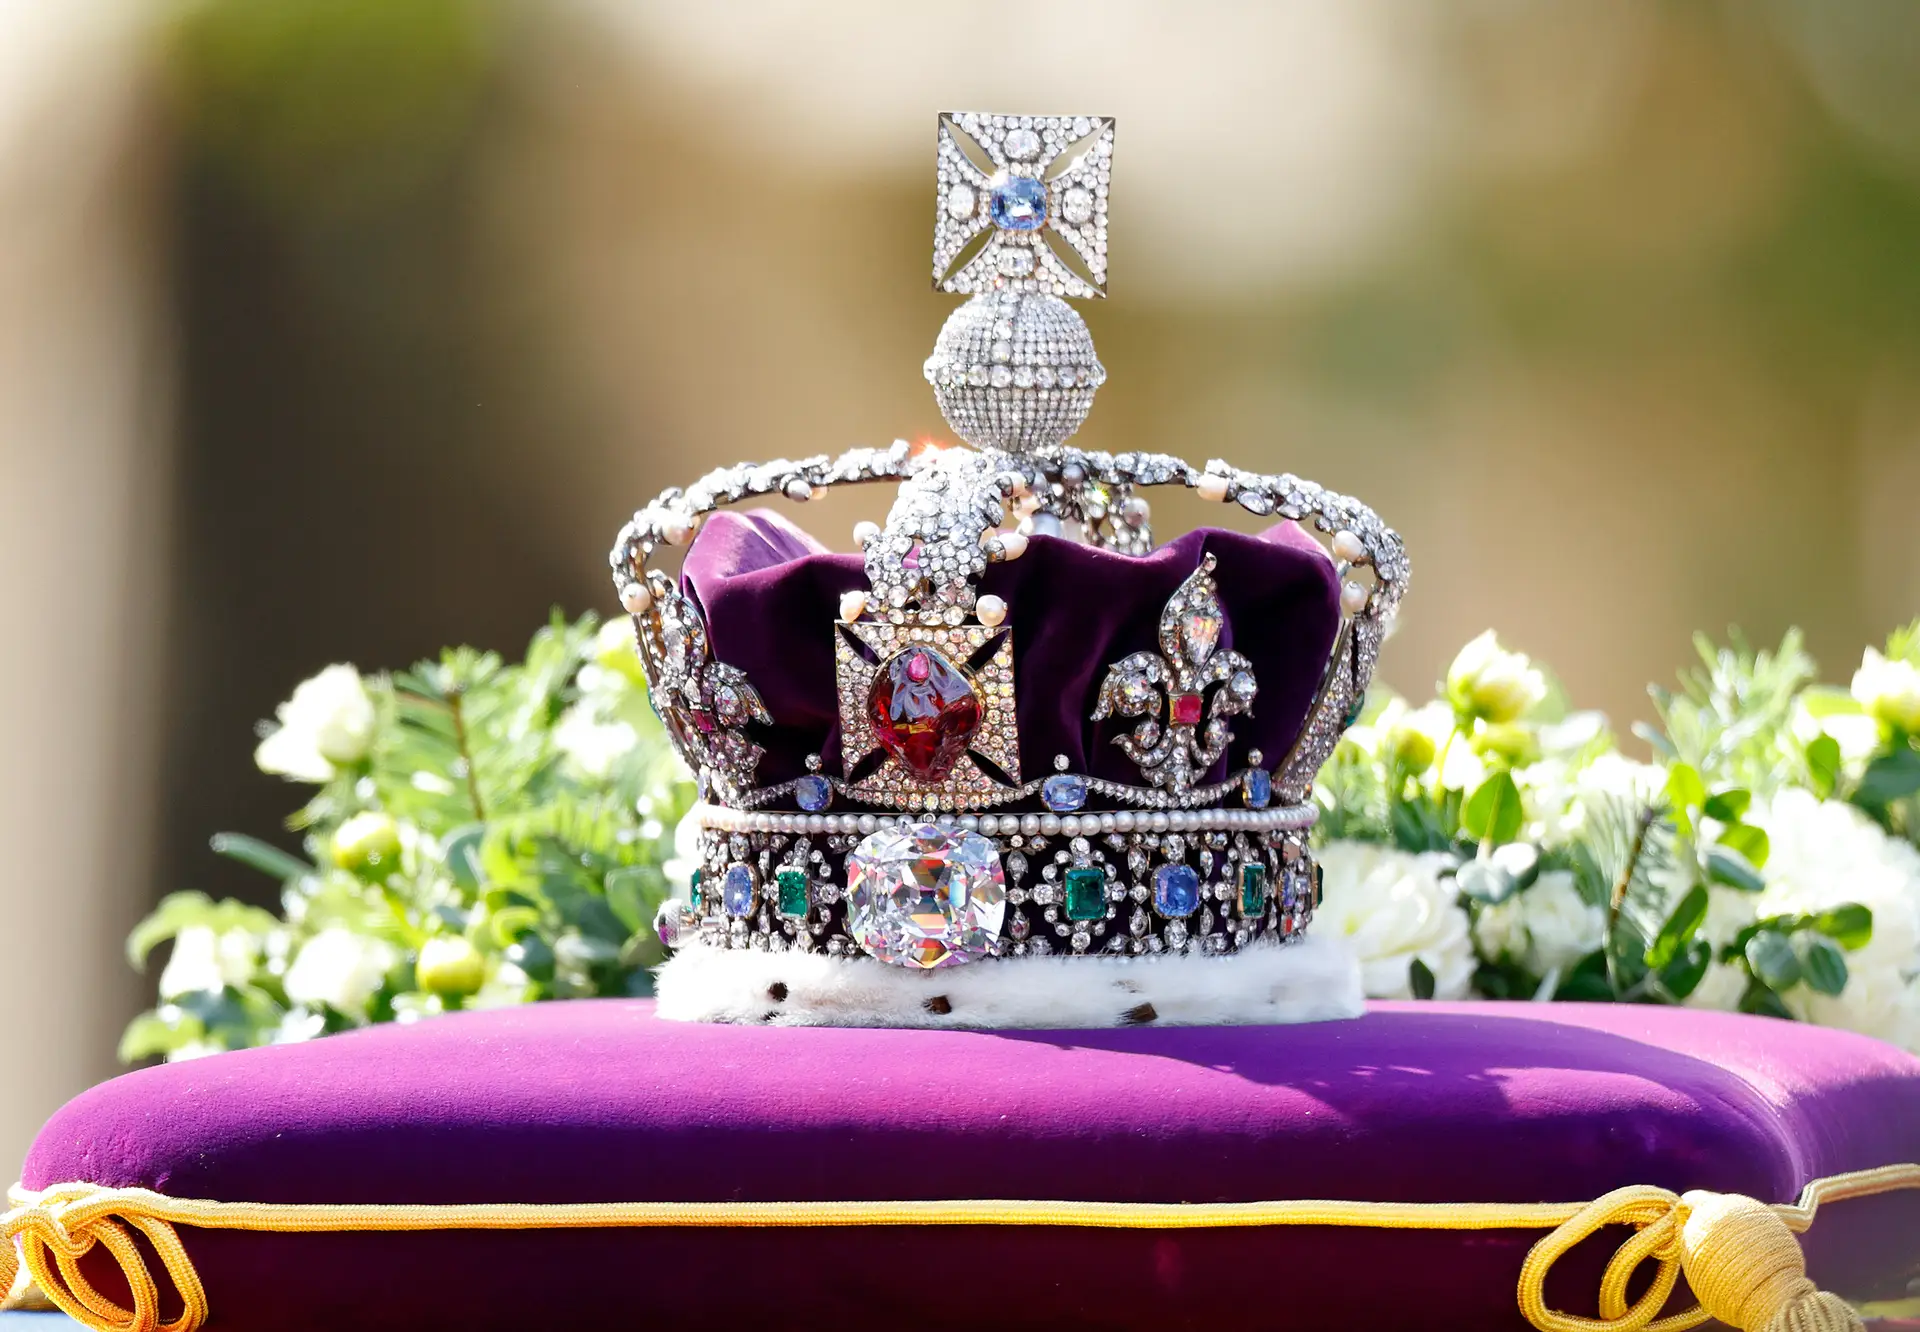 Oferta ou roubo? África da Sul apela à família real britânica que devolva o maior diamante lapidado do mundo